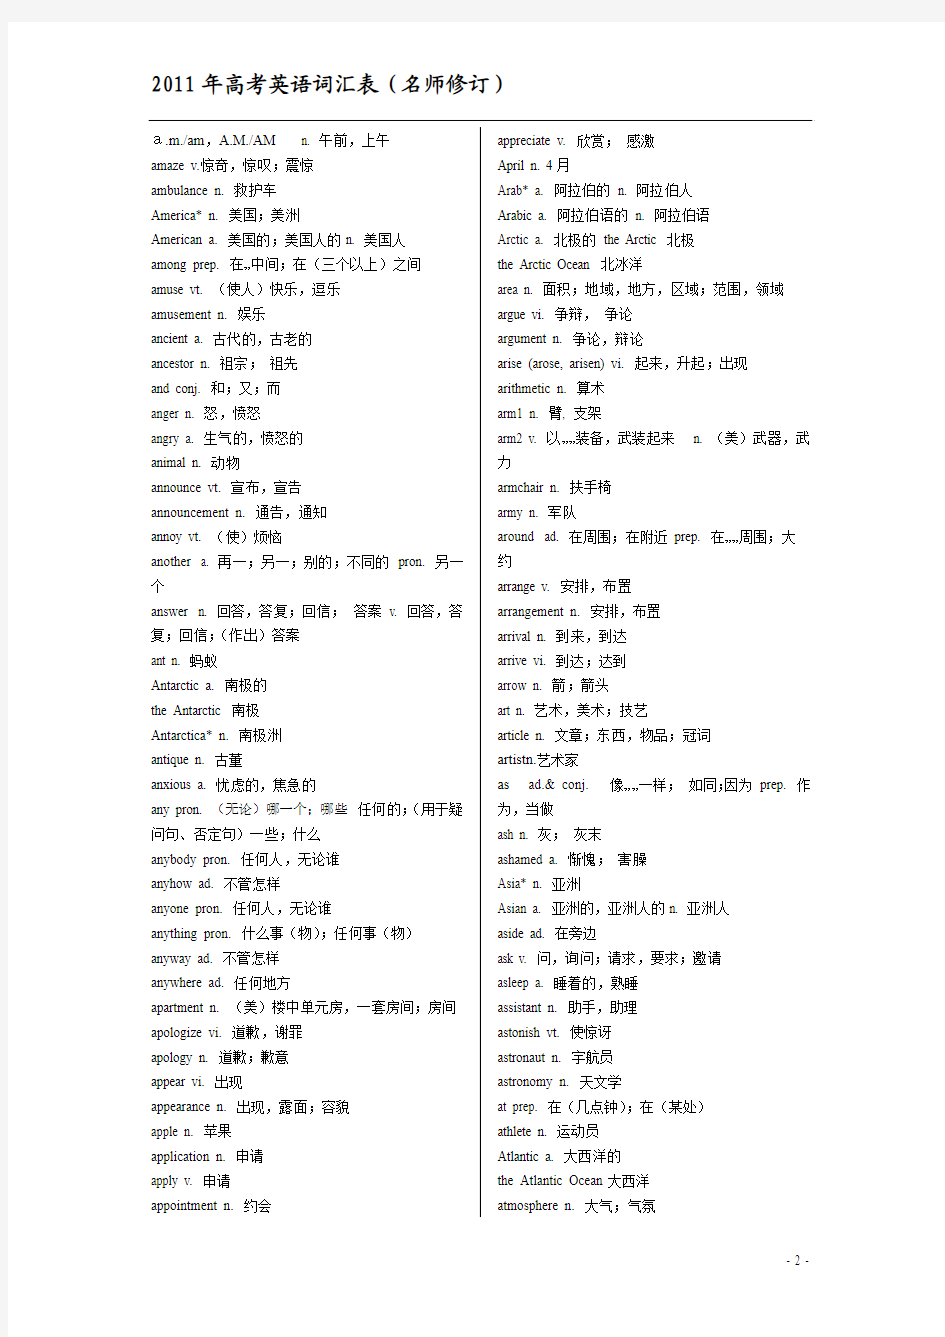 2011年高考英语词汇表(最新修订版)